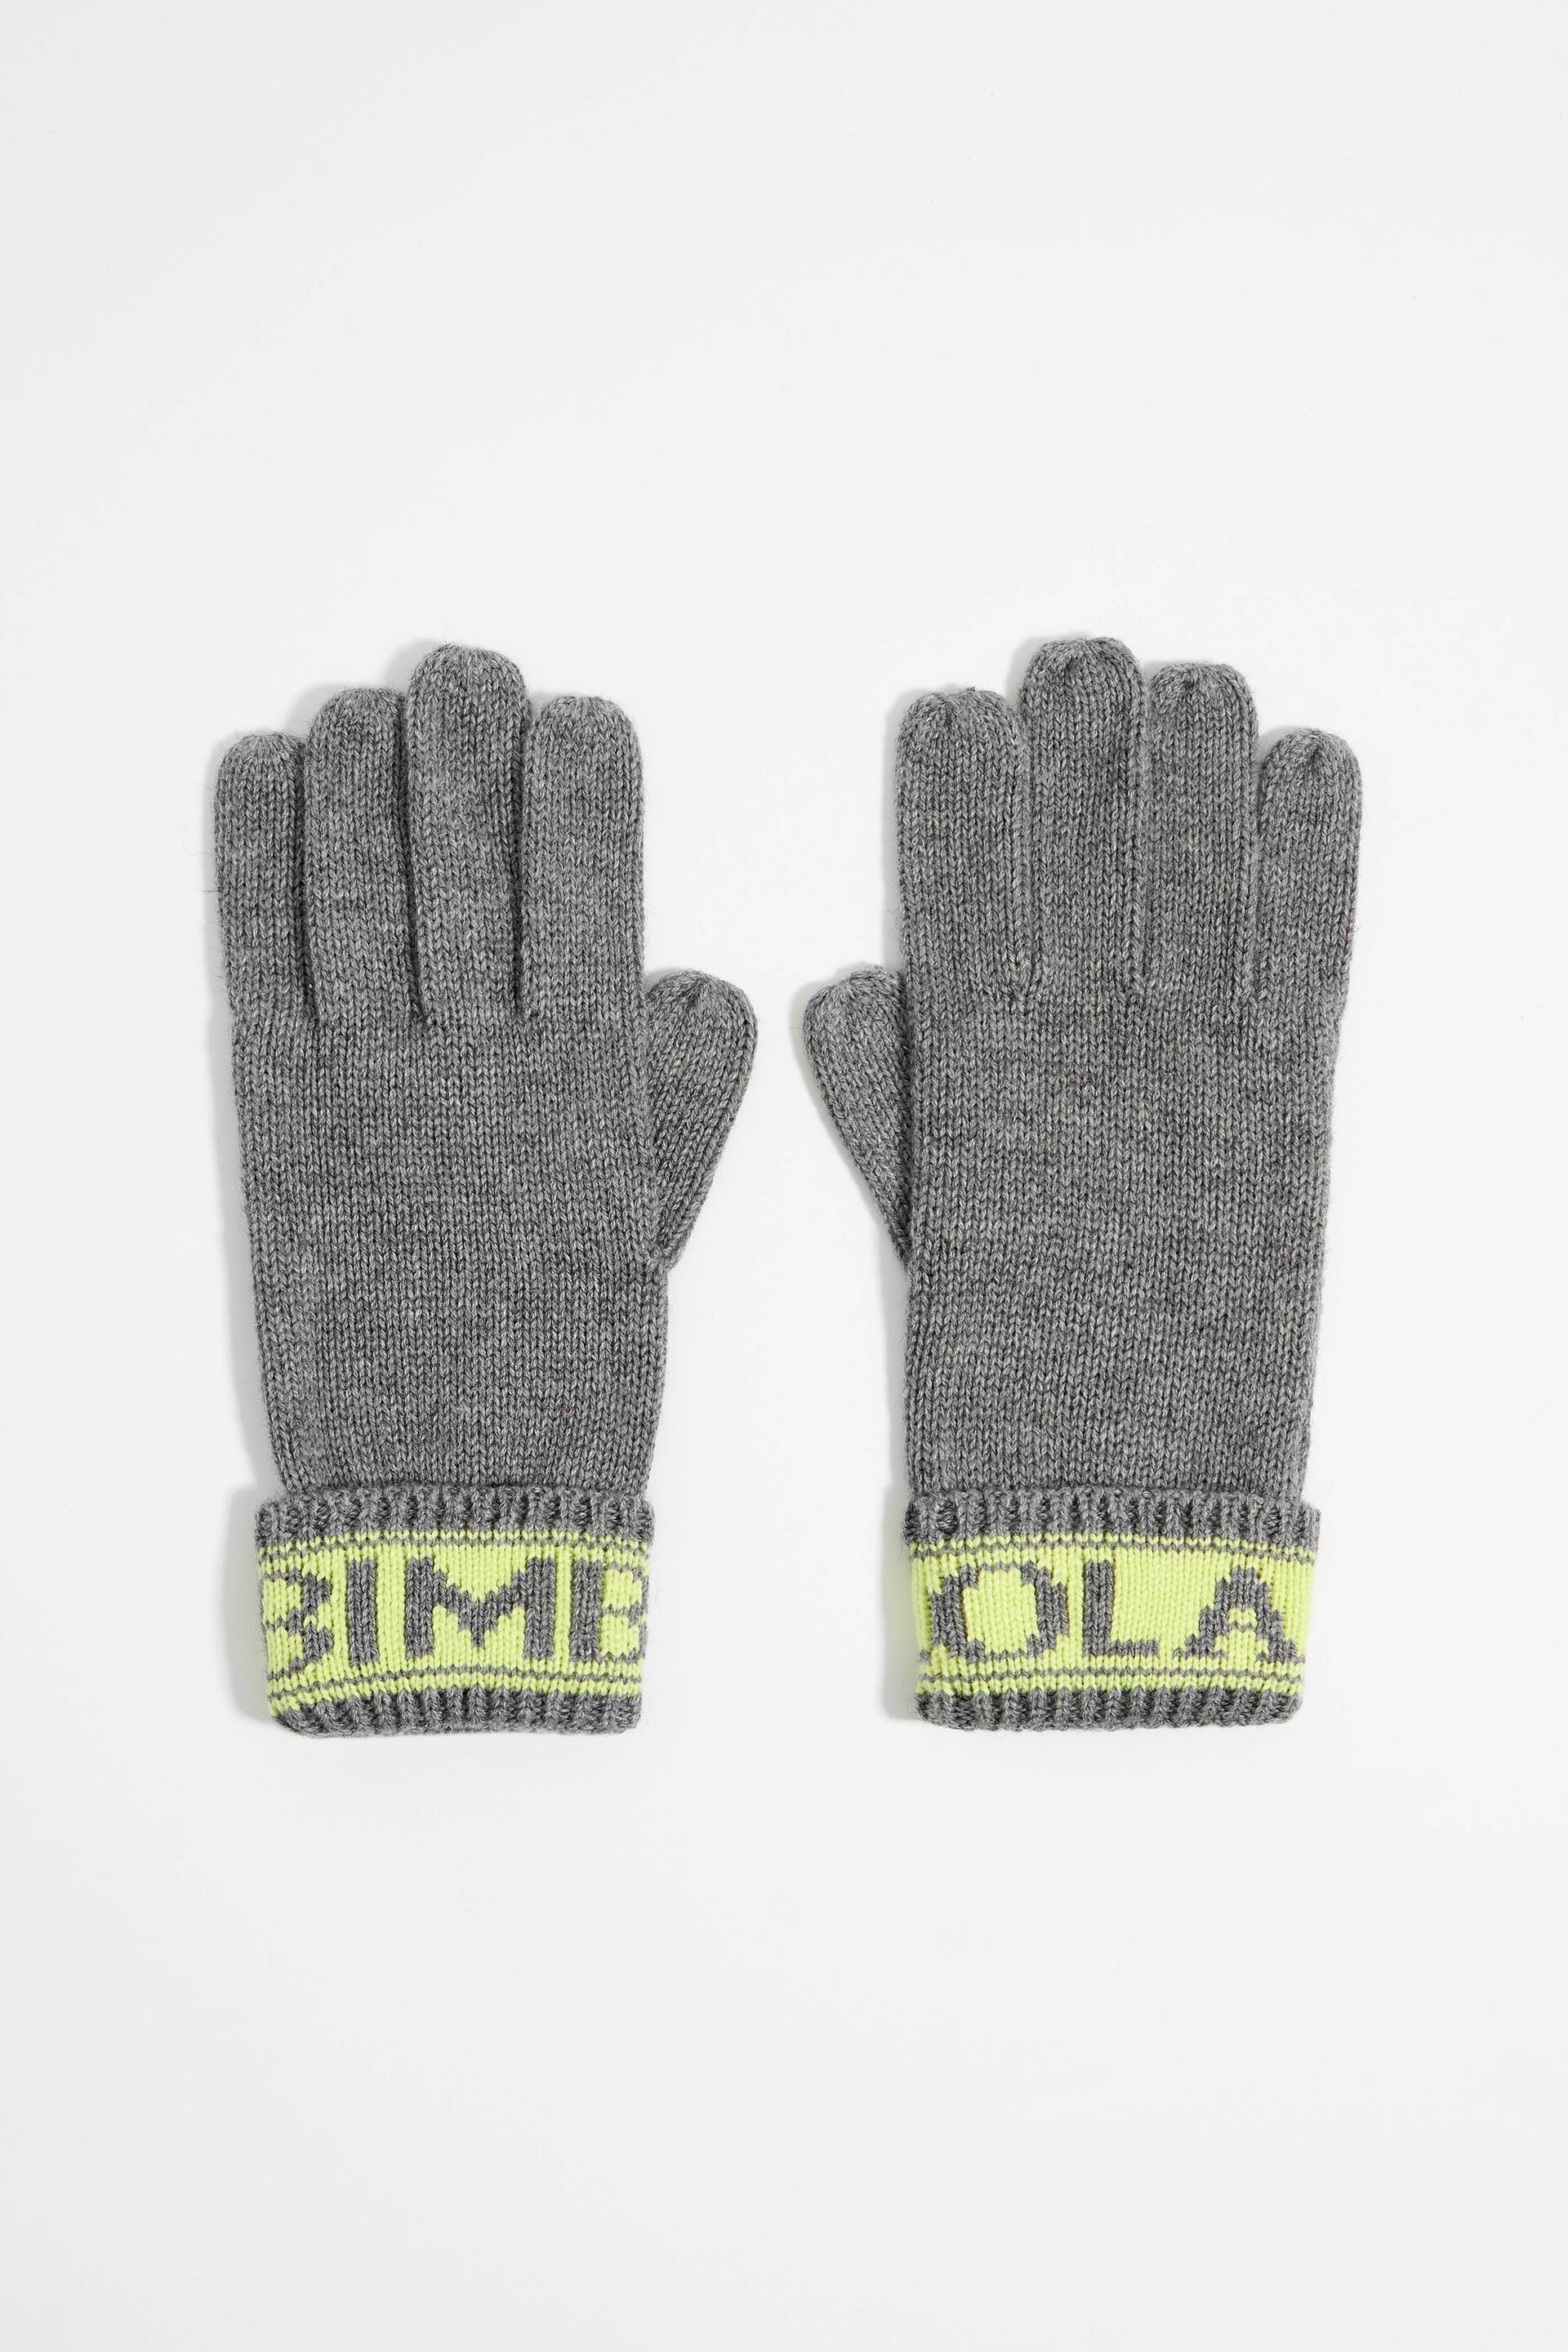 Перчатки Bimba Y Lola для женщин, трикотажные, размер M, 232BAGU10 10010, серые